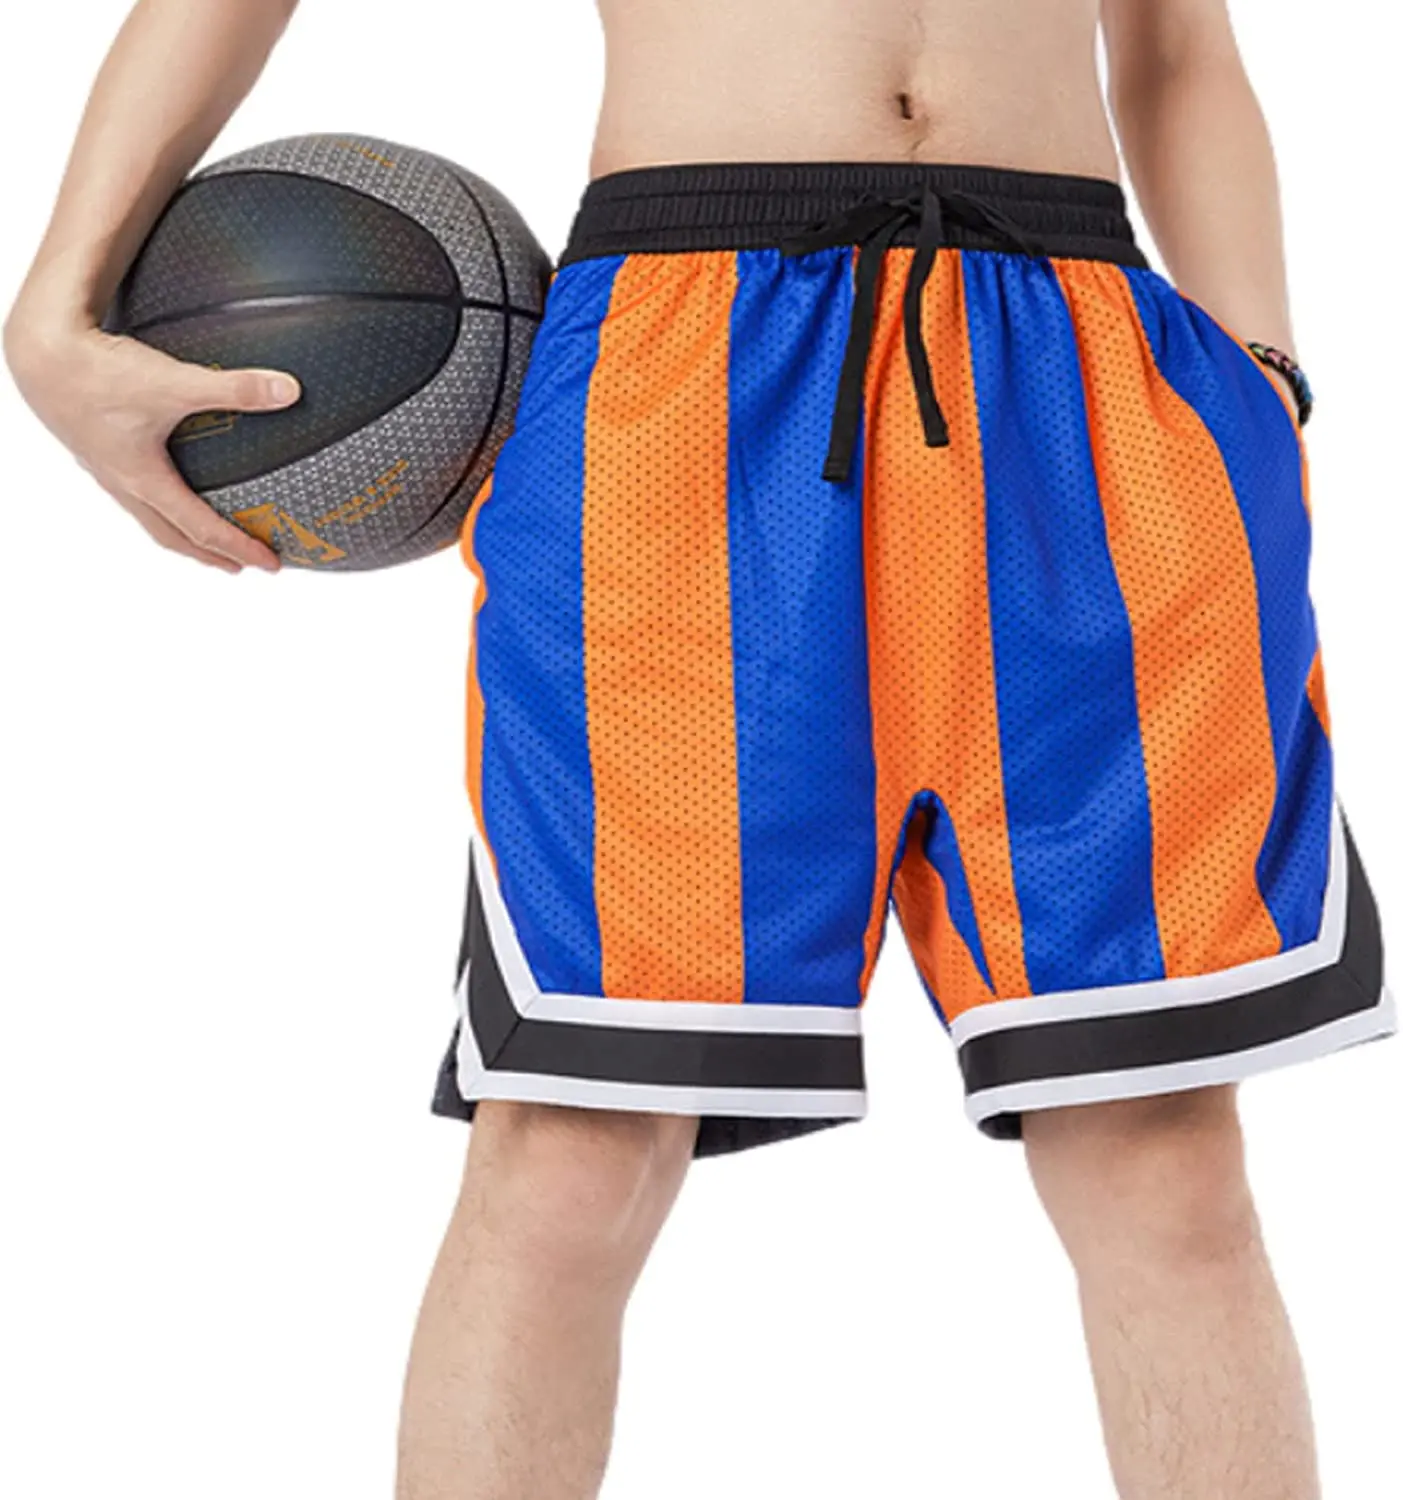 Баскетбольные шорты